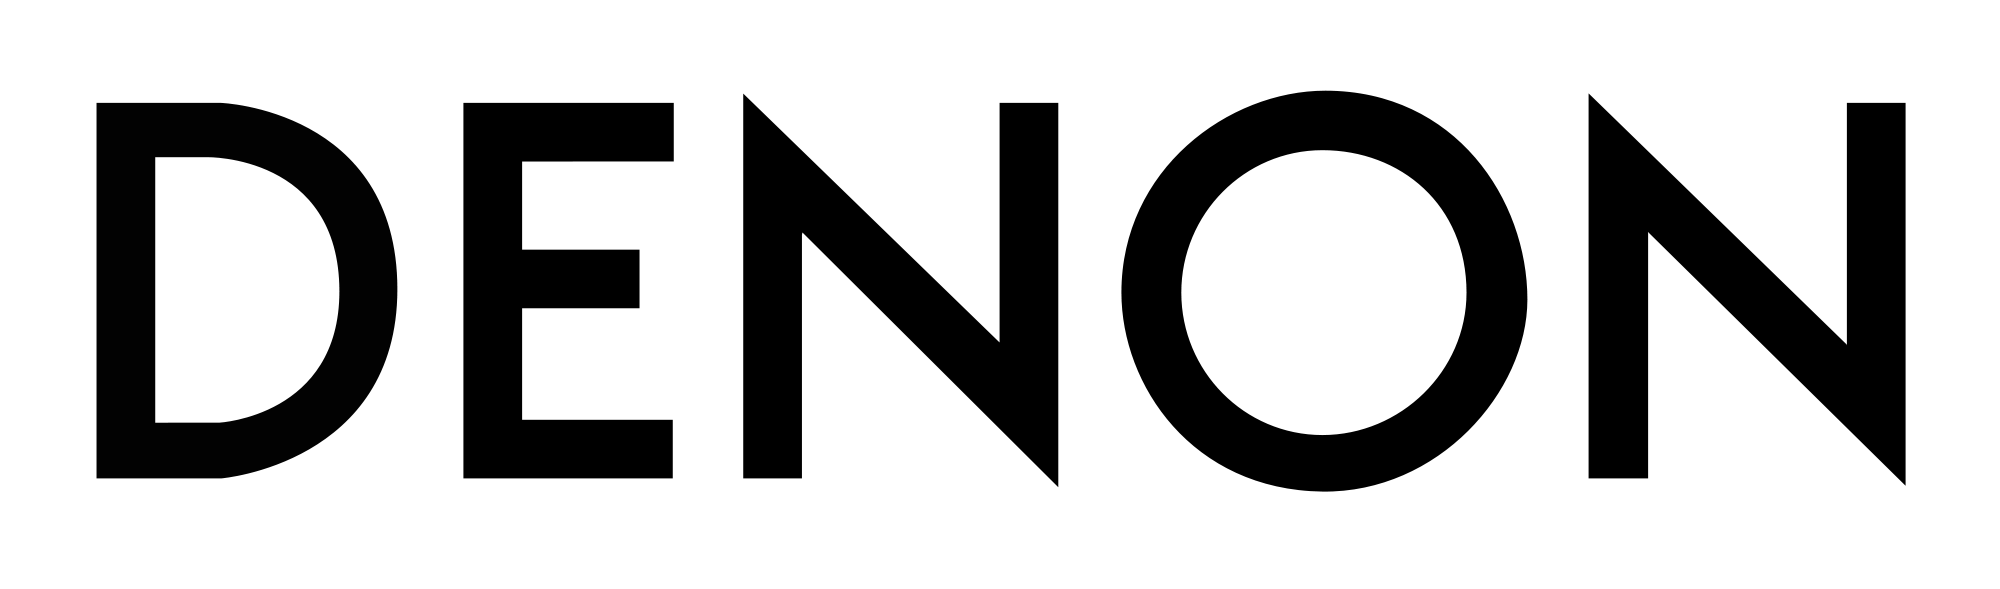 2000px-Denon_logo.svg.png